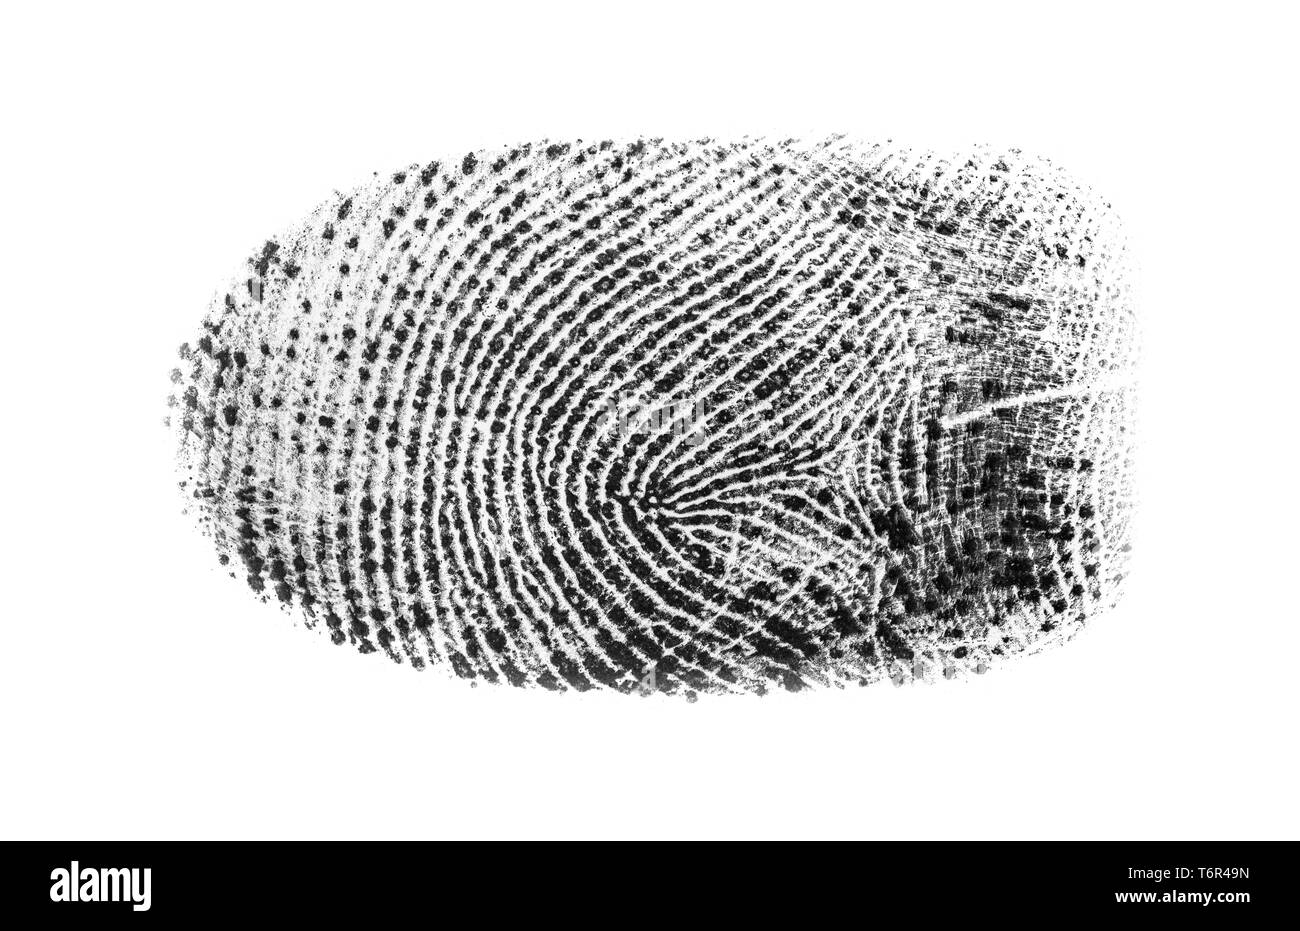 Makro Nahaufnahme von einem einzigen fettige Fingerabdrücke auf einem weißen Hintergrund. Fingerprint Ausschnitt. Stockfoto